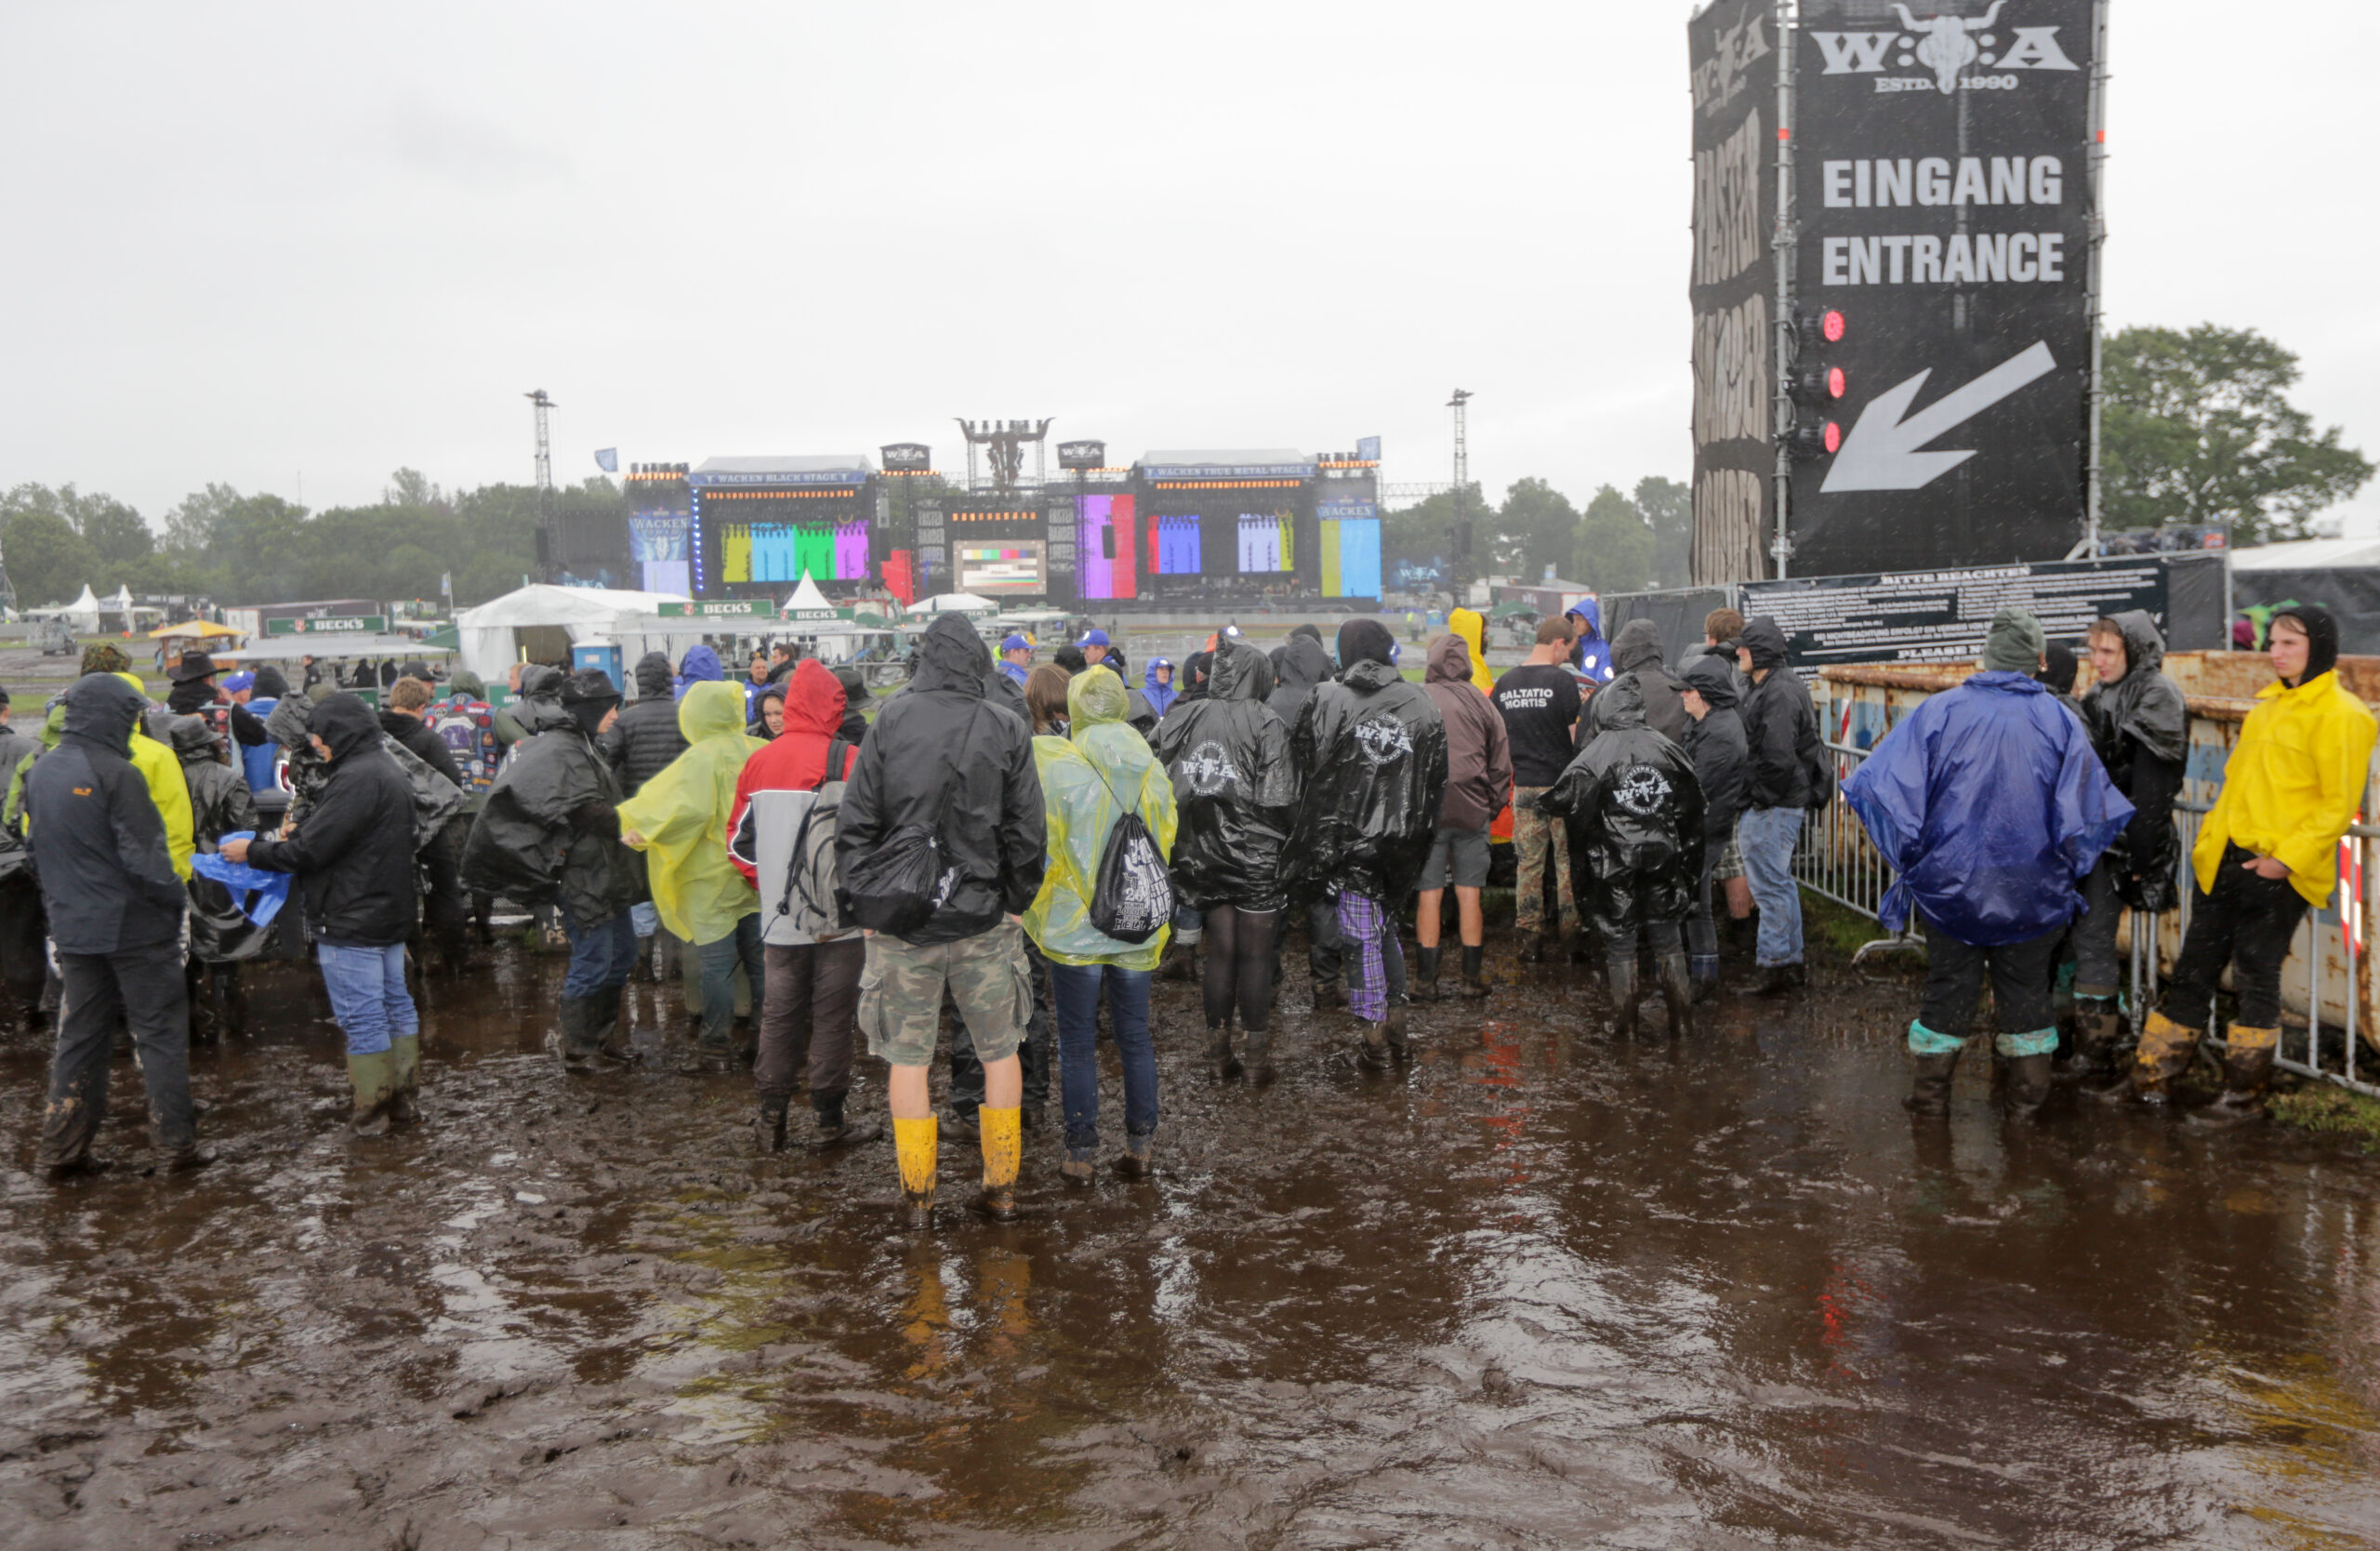 Wacken-Fans sind Matsch gewohnt – doch dieses Jahr ist der Regen einfach zu viel.